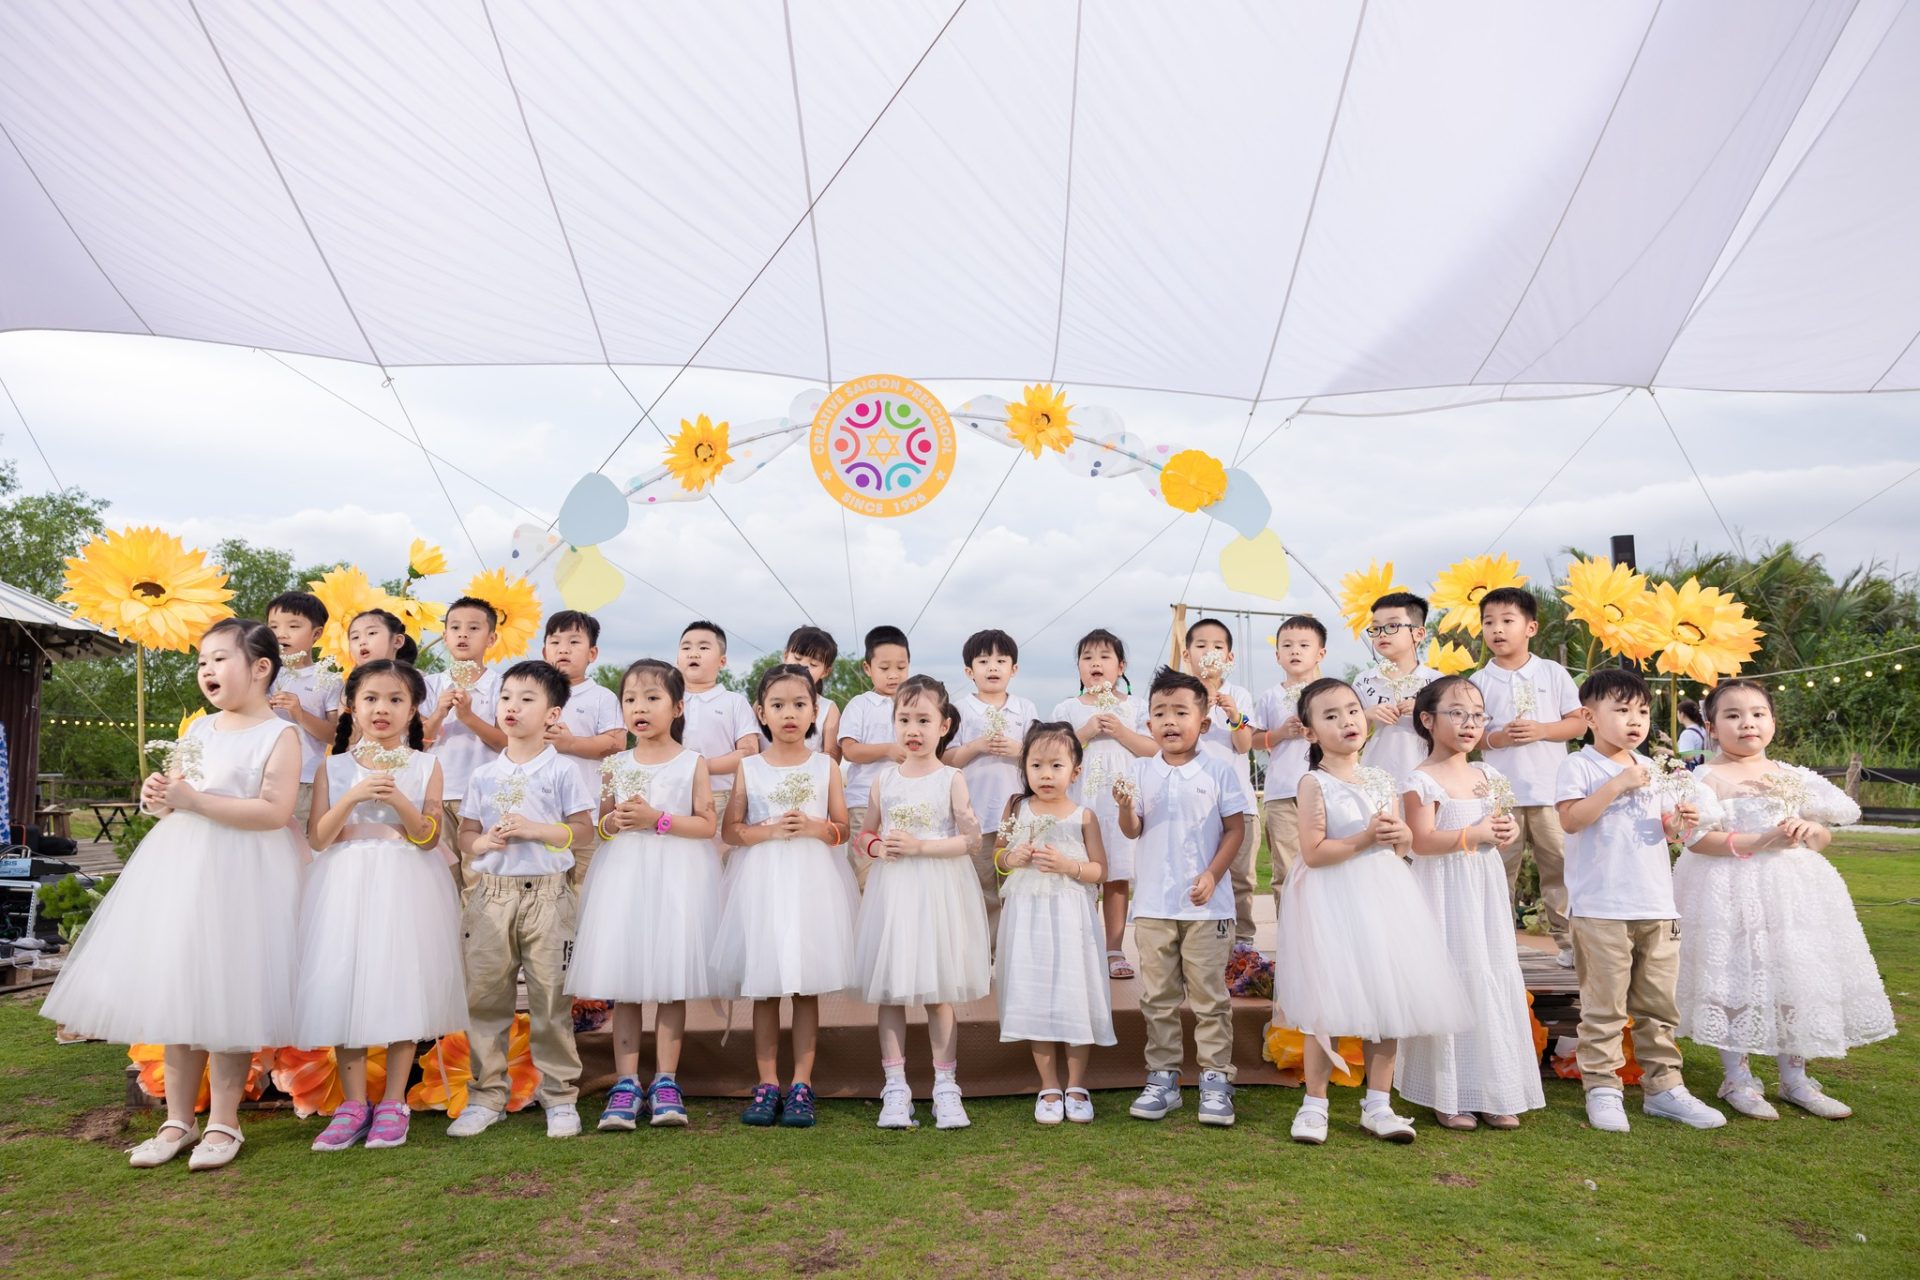 Lễ Tổng Kết Trường Mầm non CSS - Creative Saigon Preschool (Mầm non Sài Gòn Sáng tạo Quận 10)